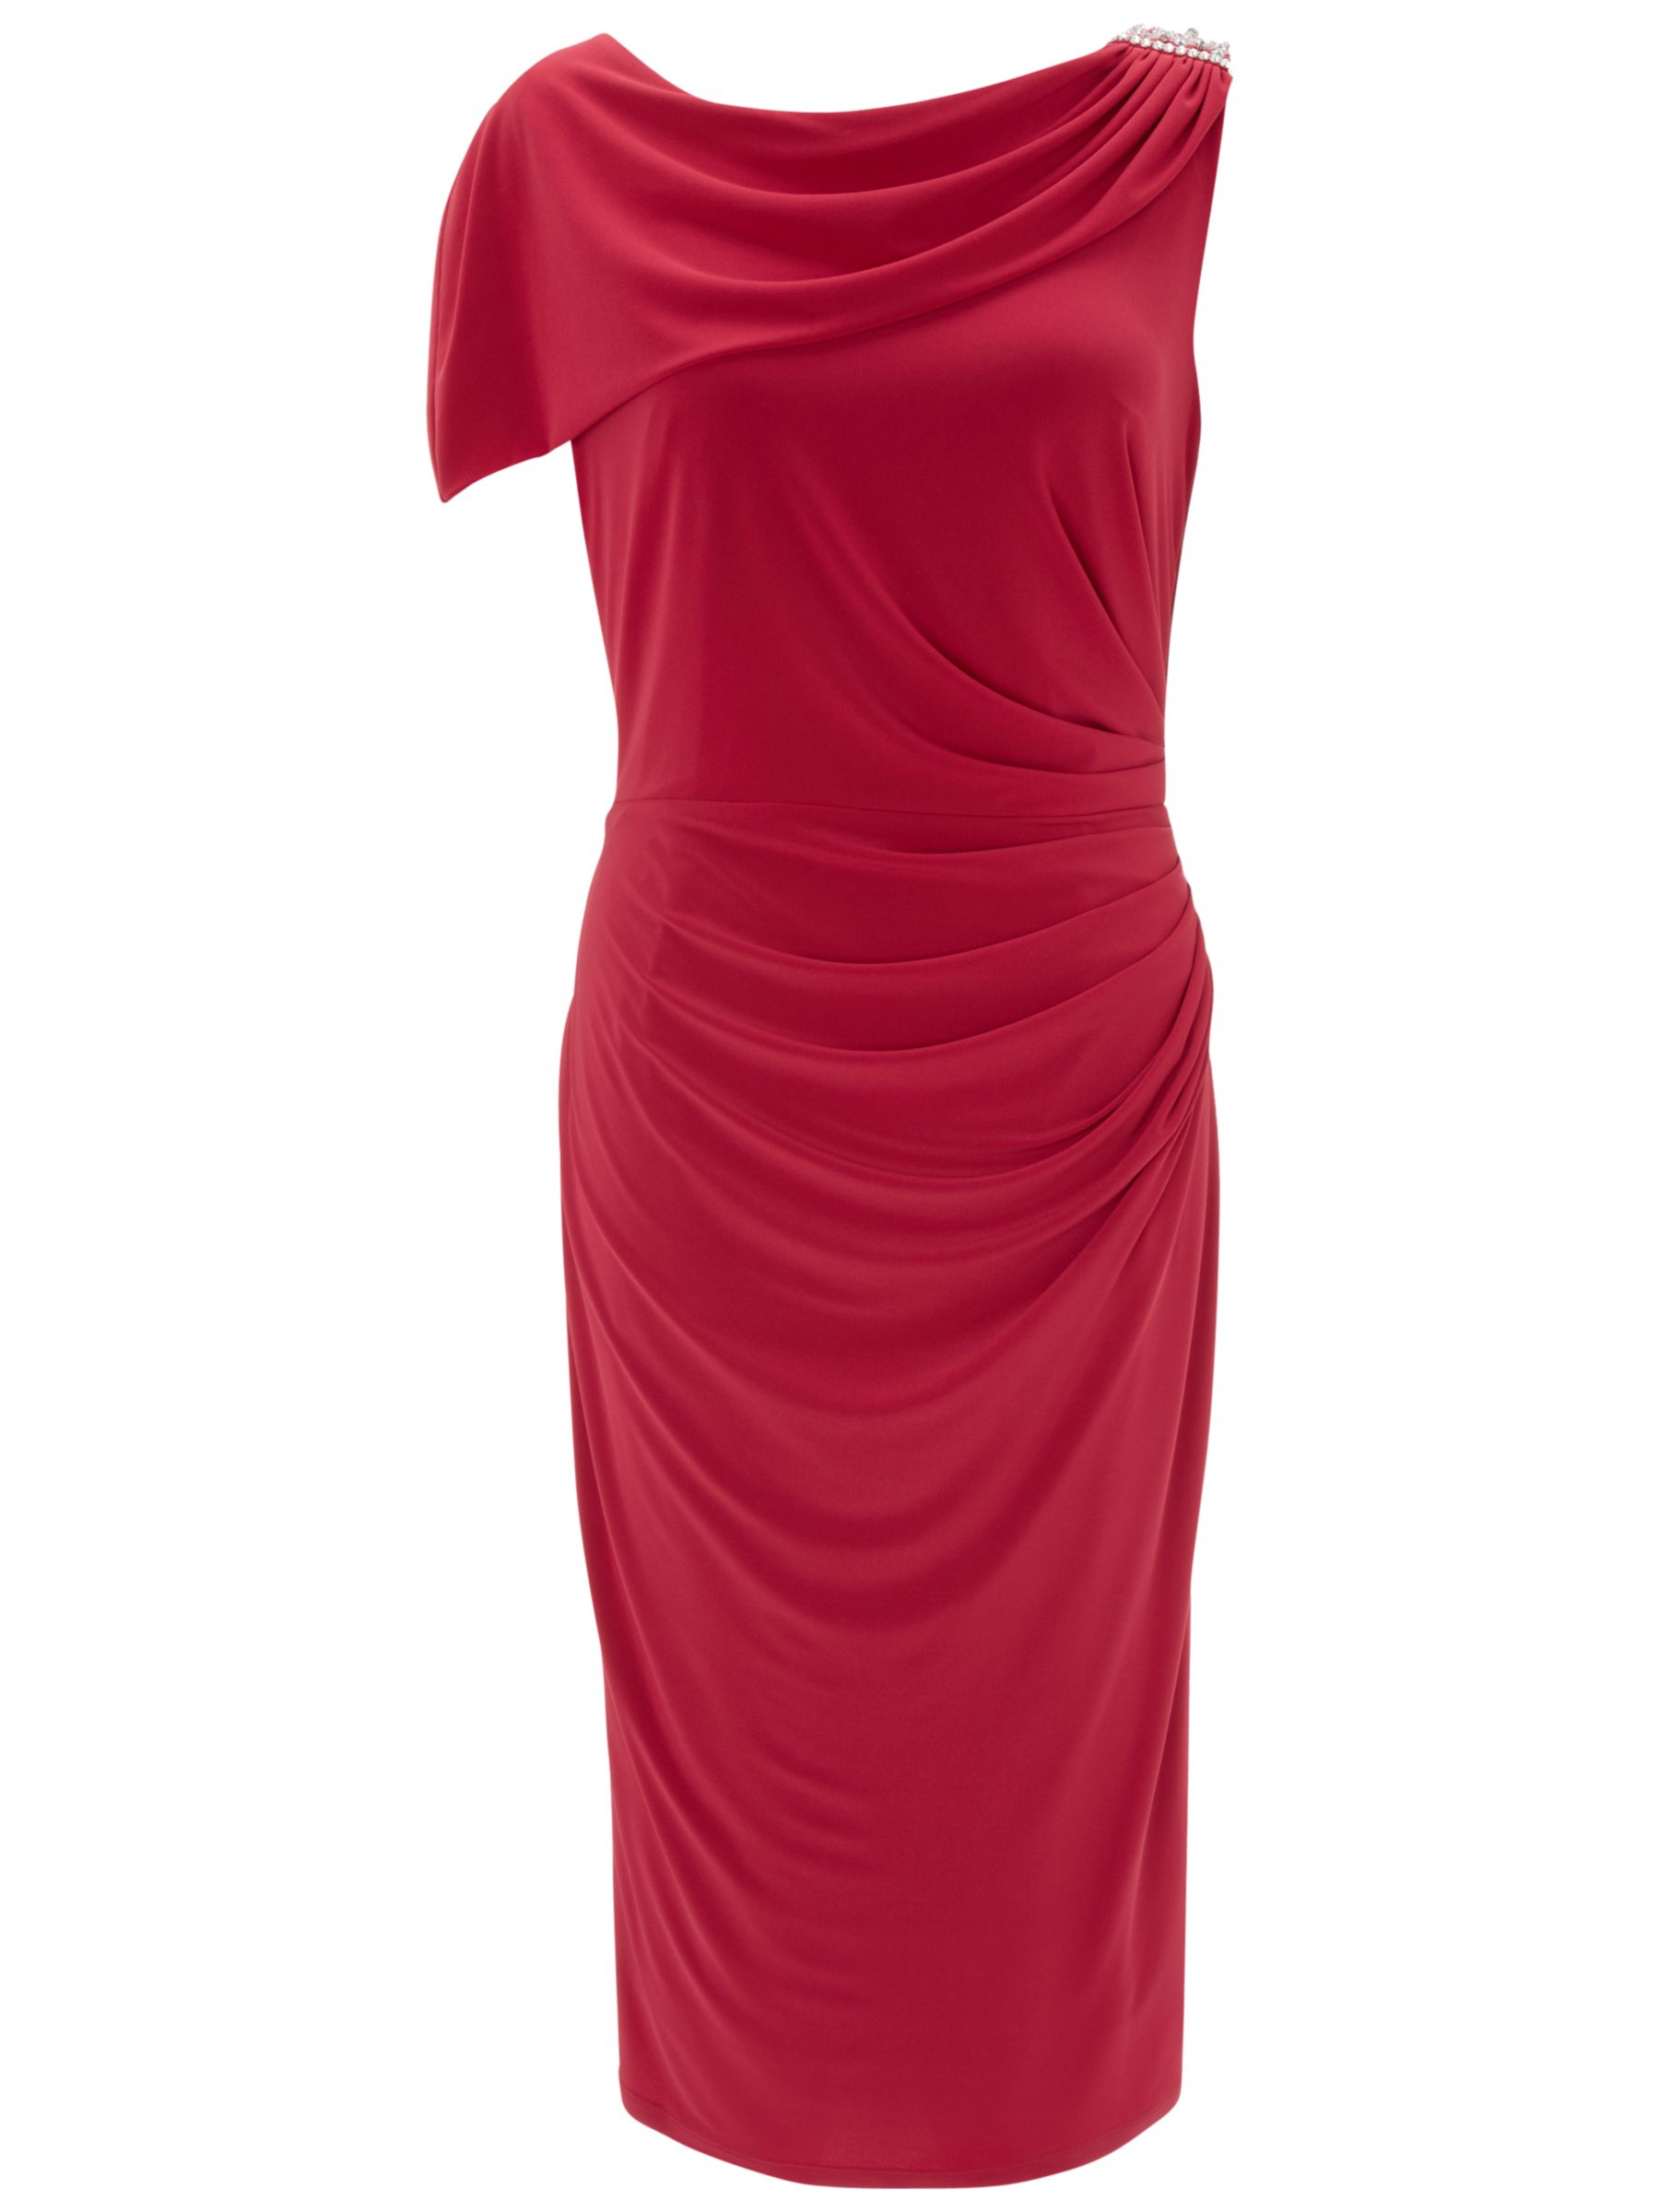 Gina Bacconi Draped Jersey Dress, Tropical Red